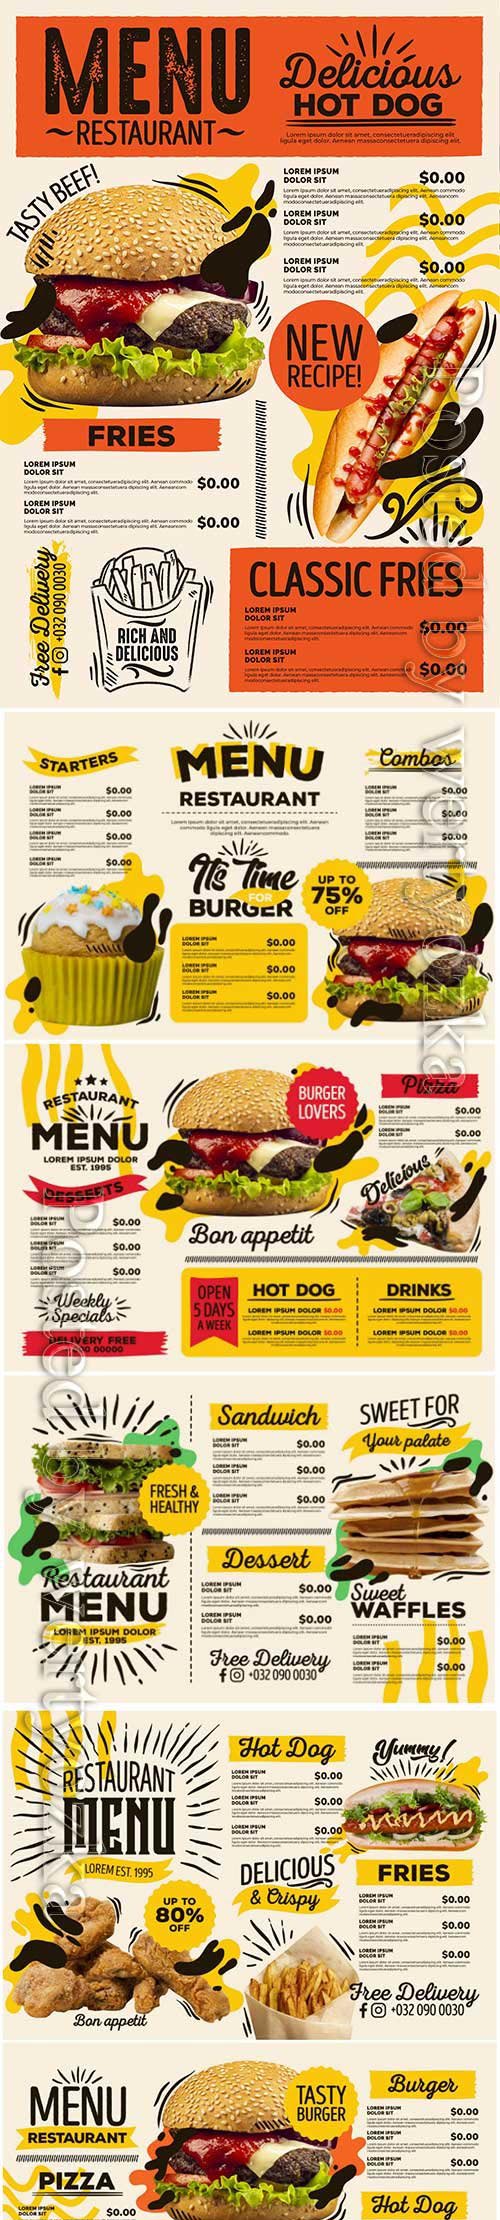 Digital restaurant menu fast food delivery